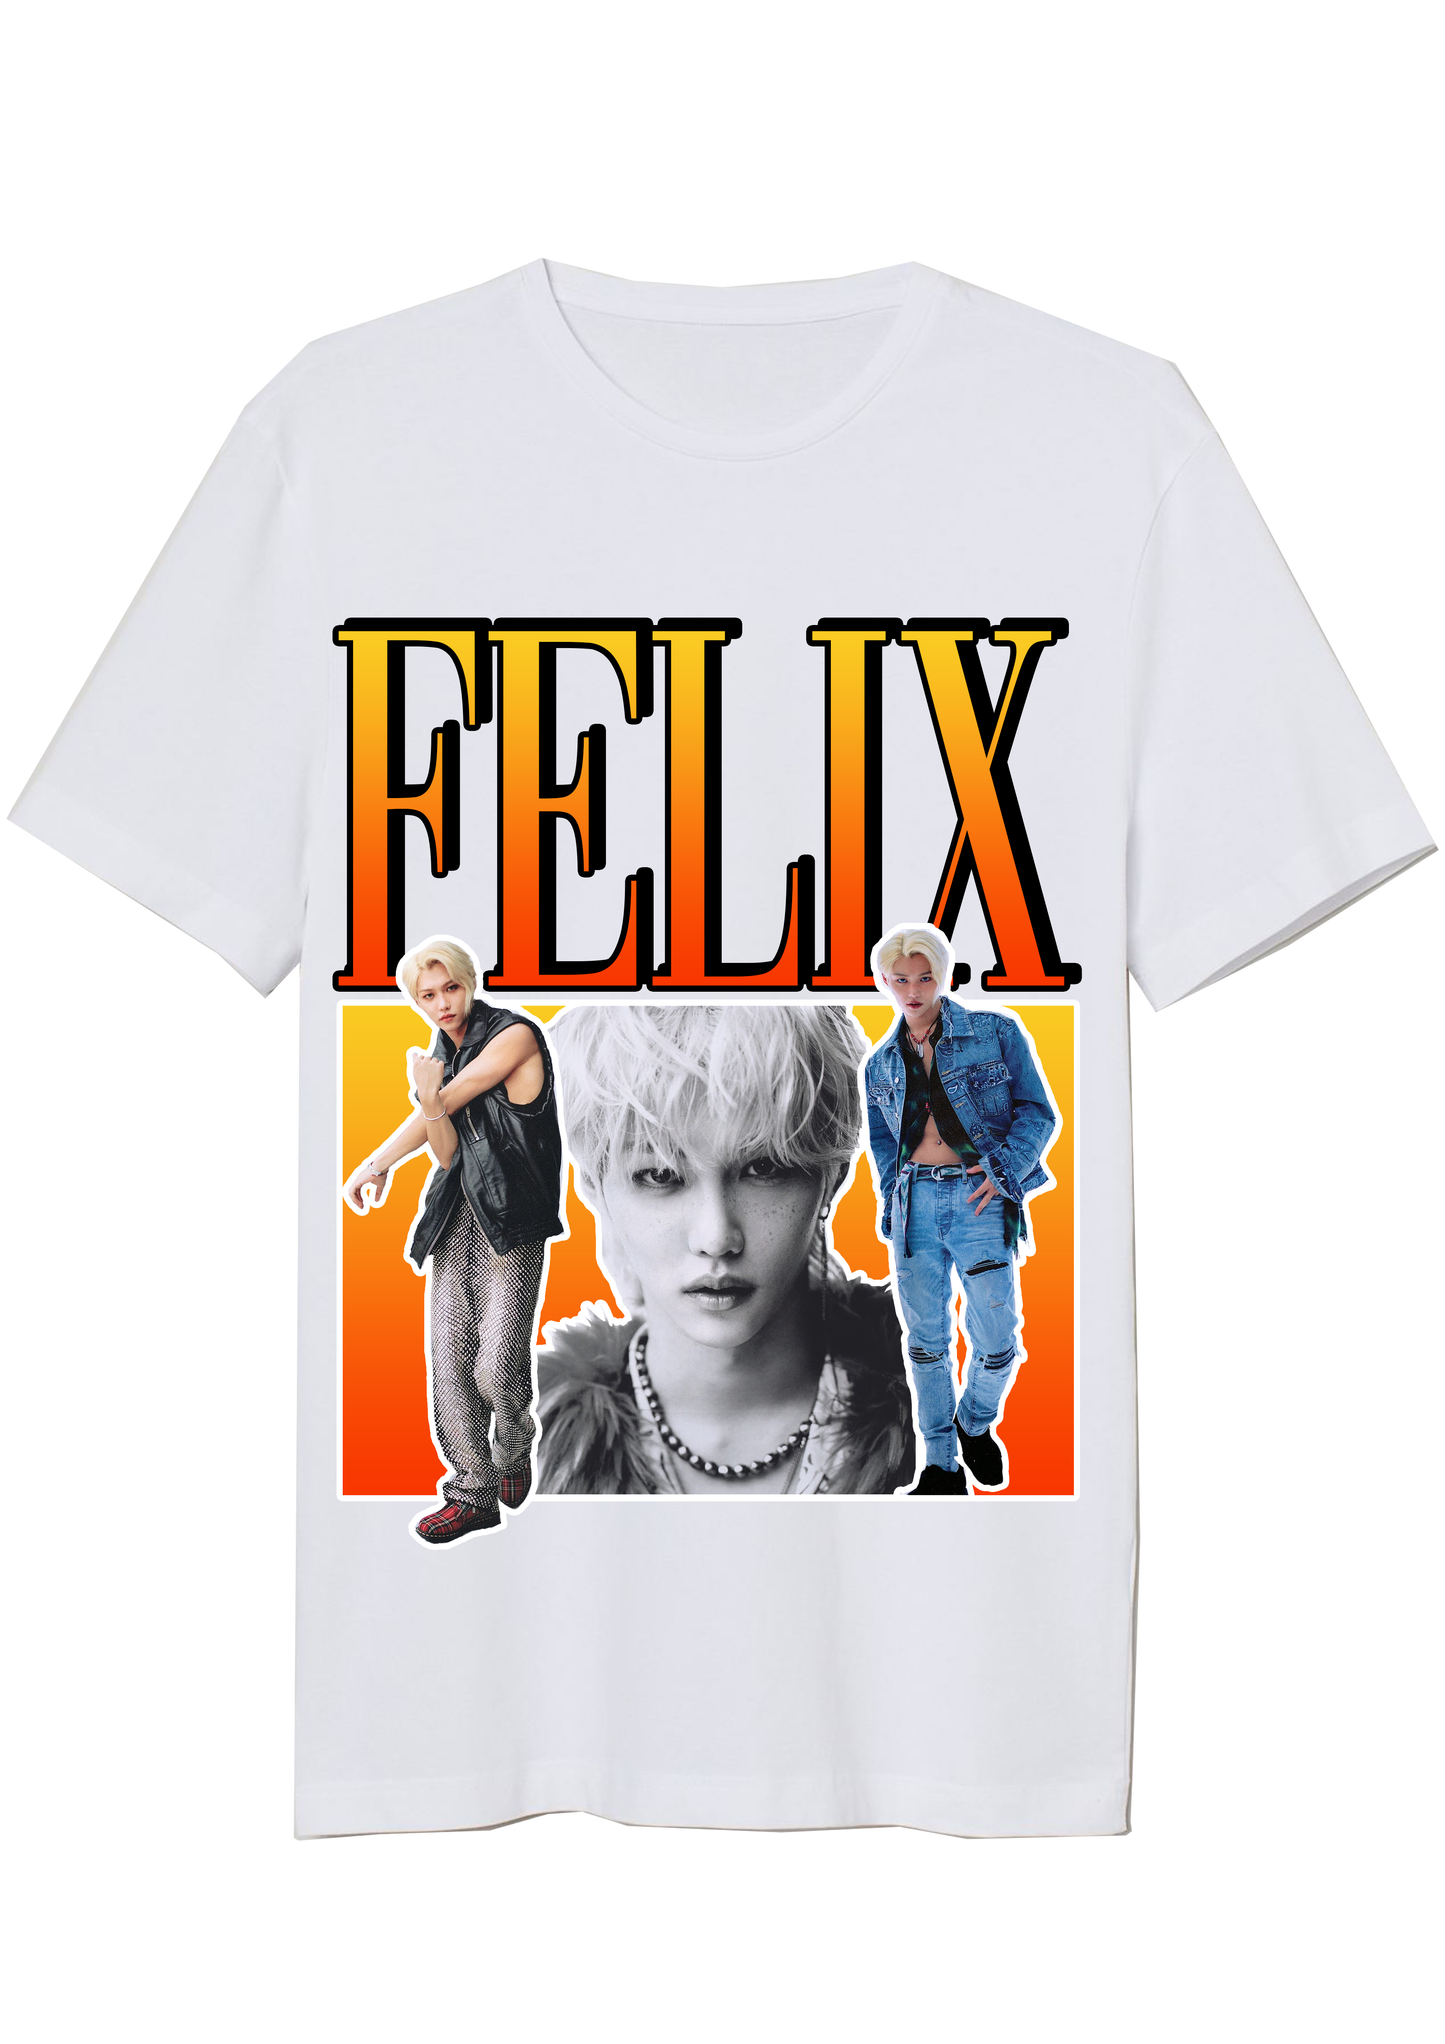 Felix Vintage T-Shirt